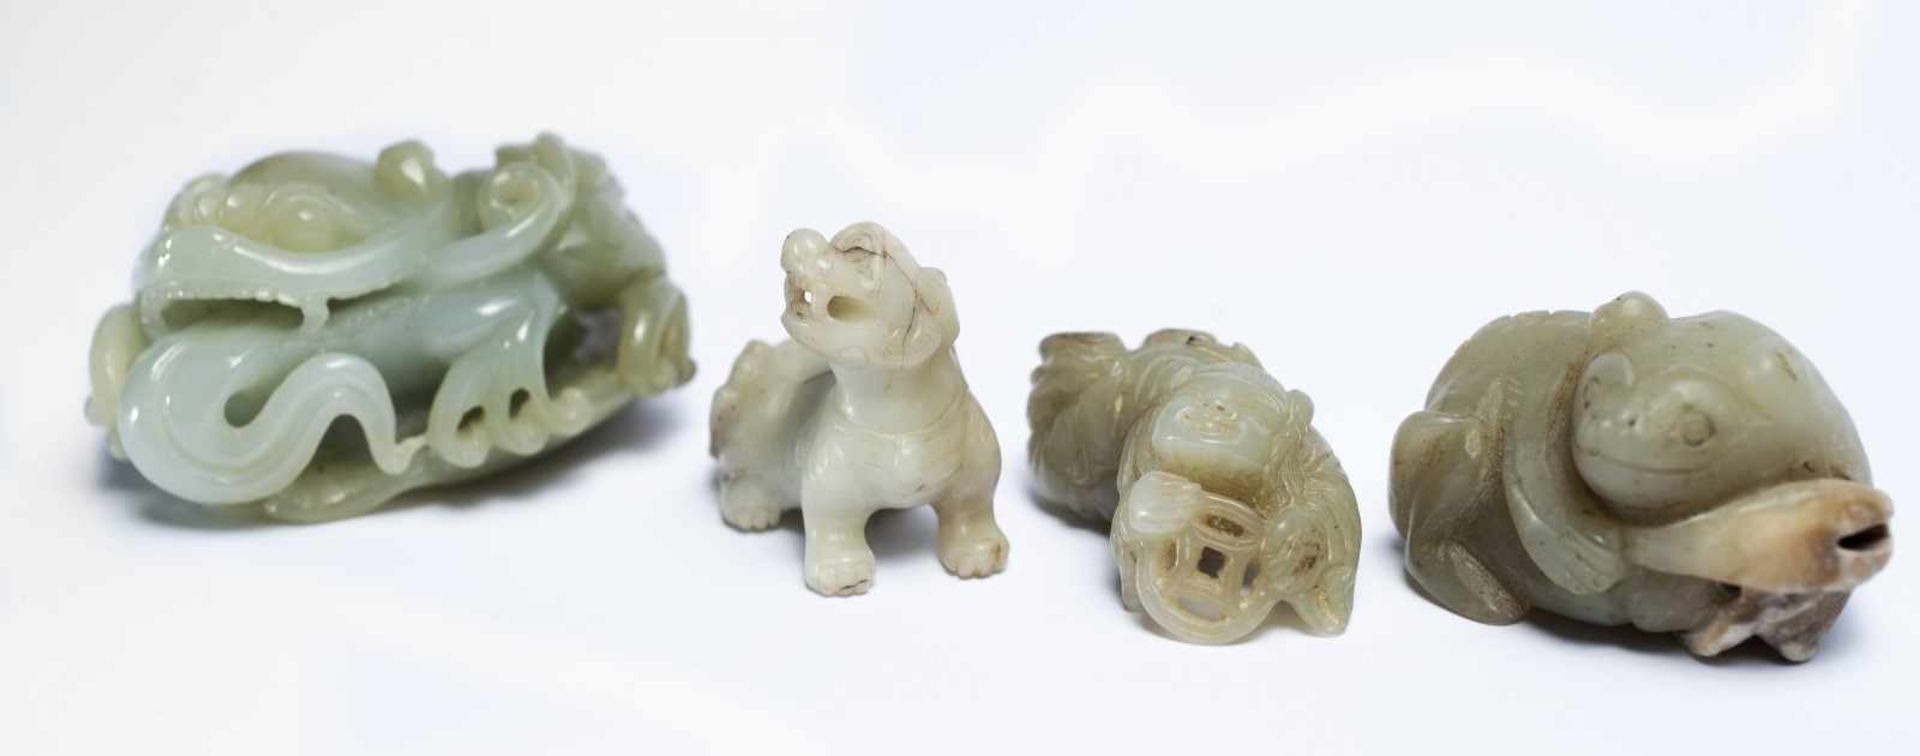 Vier chinesische Fabeltiere aus Jade3,5 x 5 x 6.5 cm; 3,5 x 4,3 x 2,2 cm; 2 x 4,5 x 2,3 cm; 3 x 5